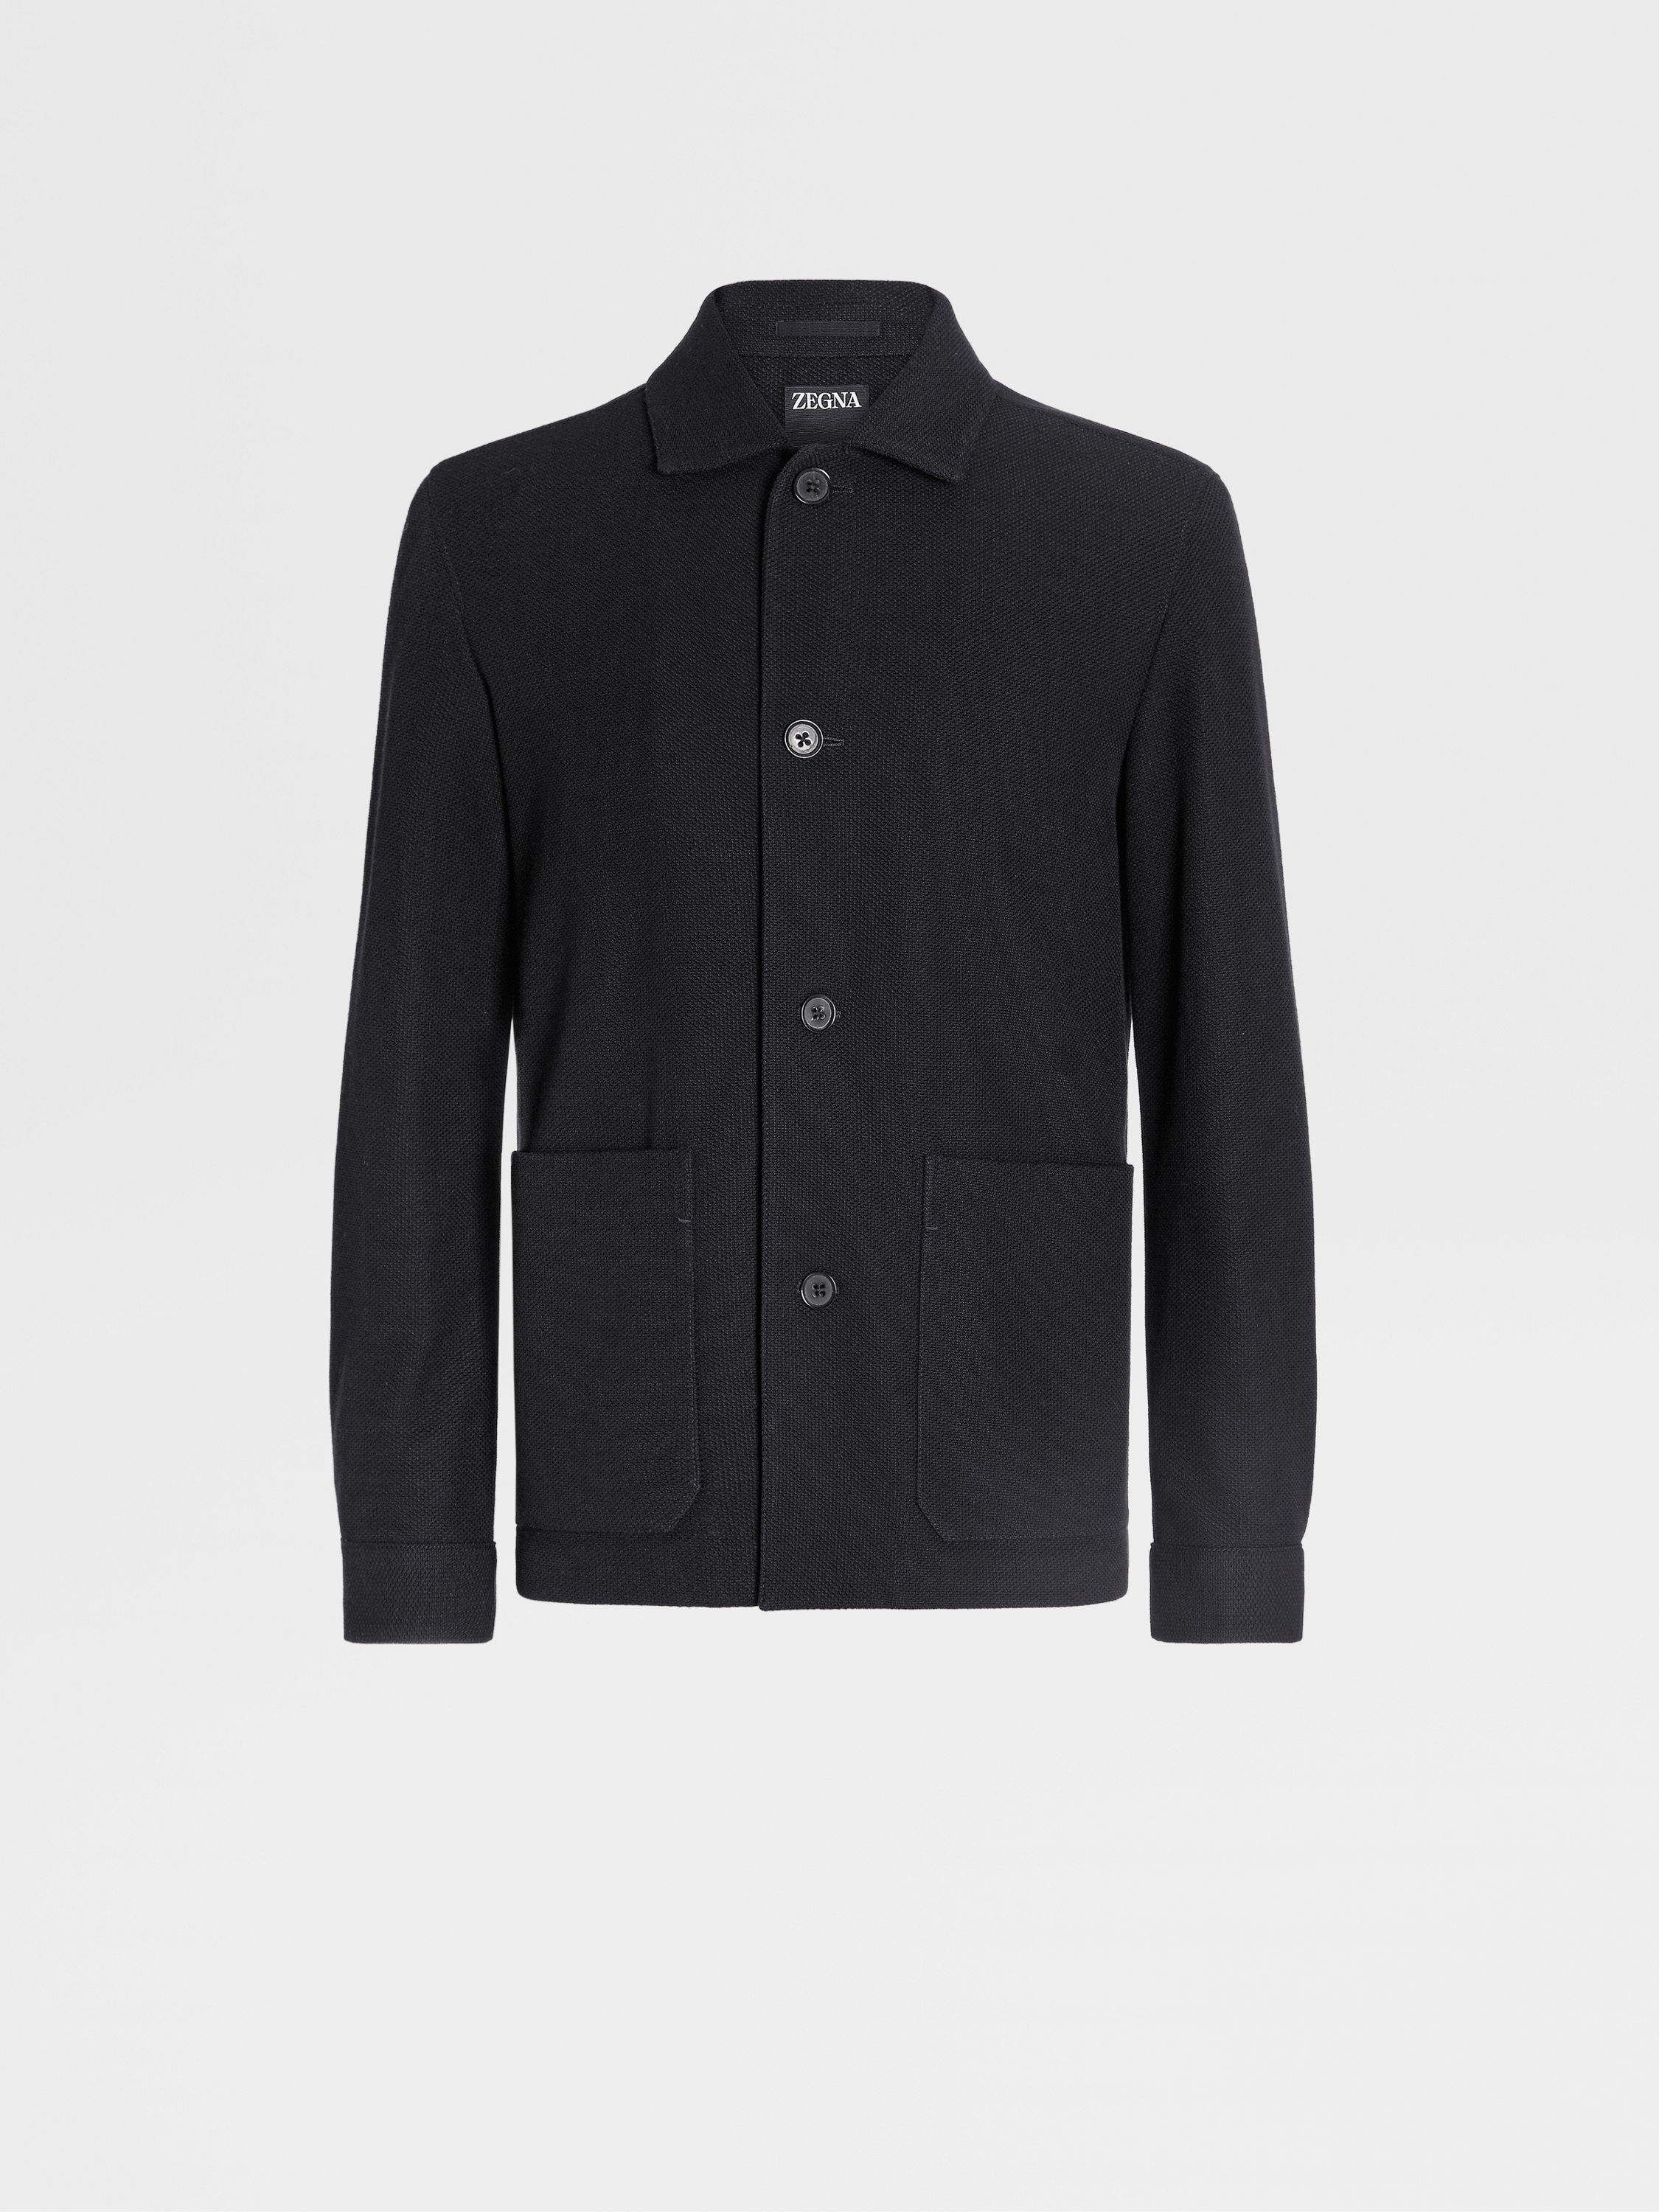 Jerseywear Wool and Cotton Chore Jacket